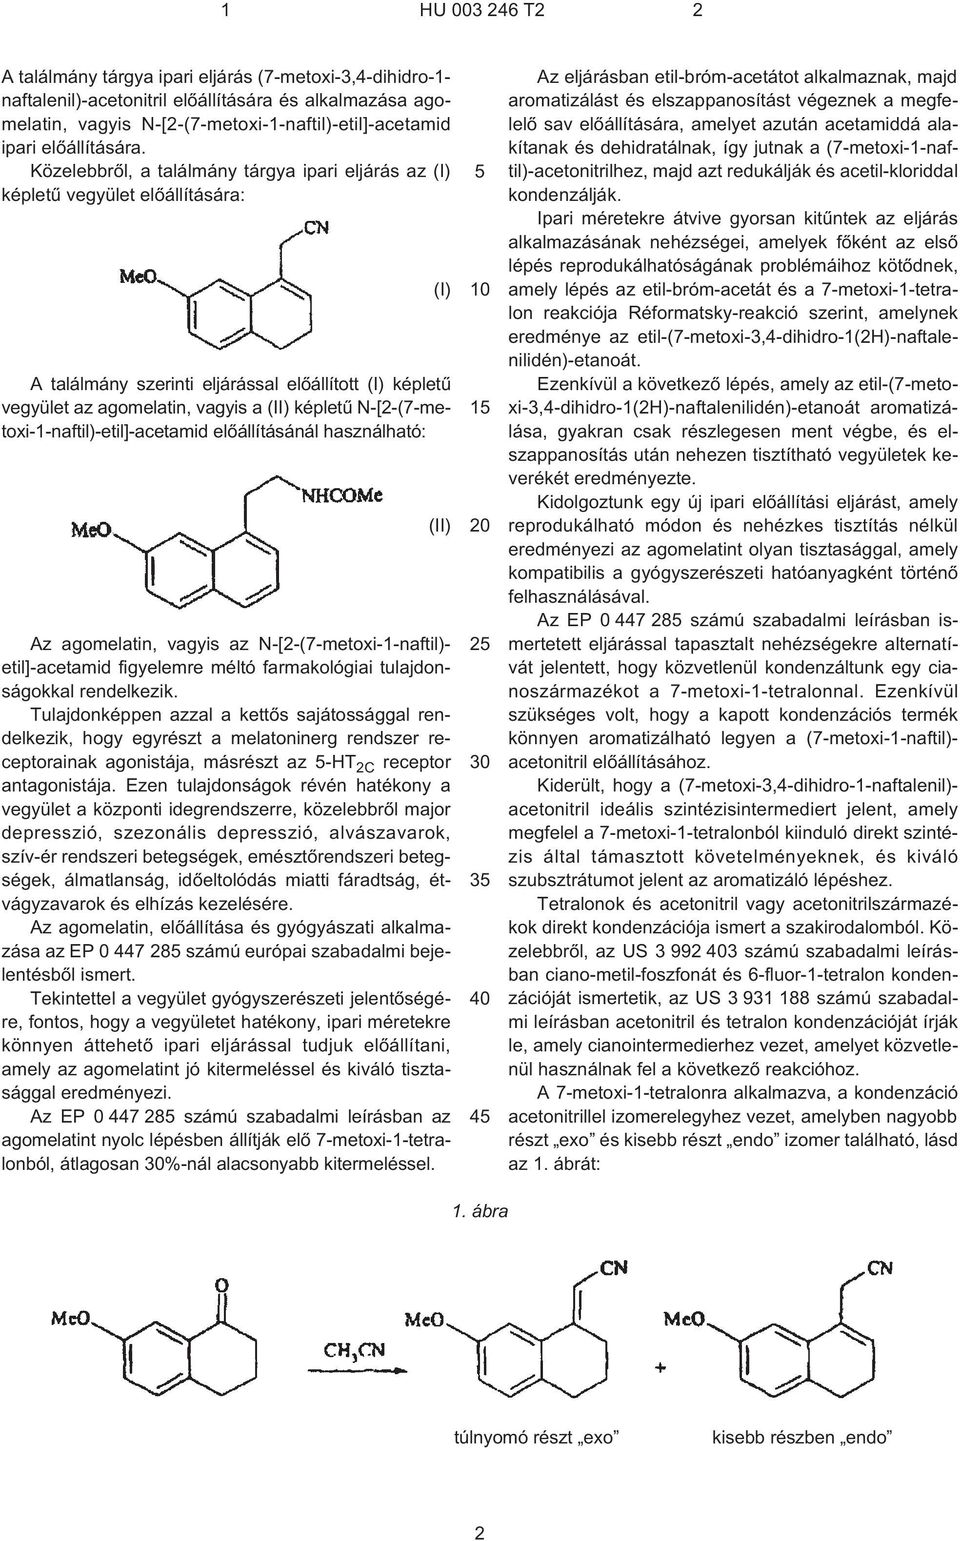 N¹[2¹(7¹metoxi-1-naftil)-etil]-acetamid elõállításánál használható: Az agomelatin, vagyis az N¹[2¹(7¹metoxi-1-naftil)- etil]-acetamid figyelemre méltó farmakológiai tulajdonságokkal rendelkezik.